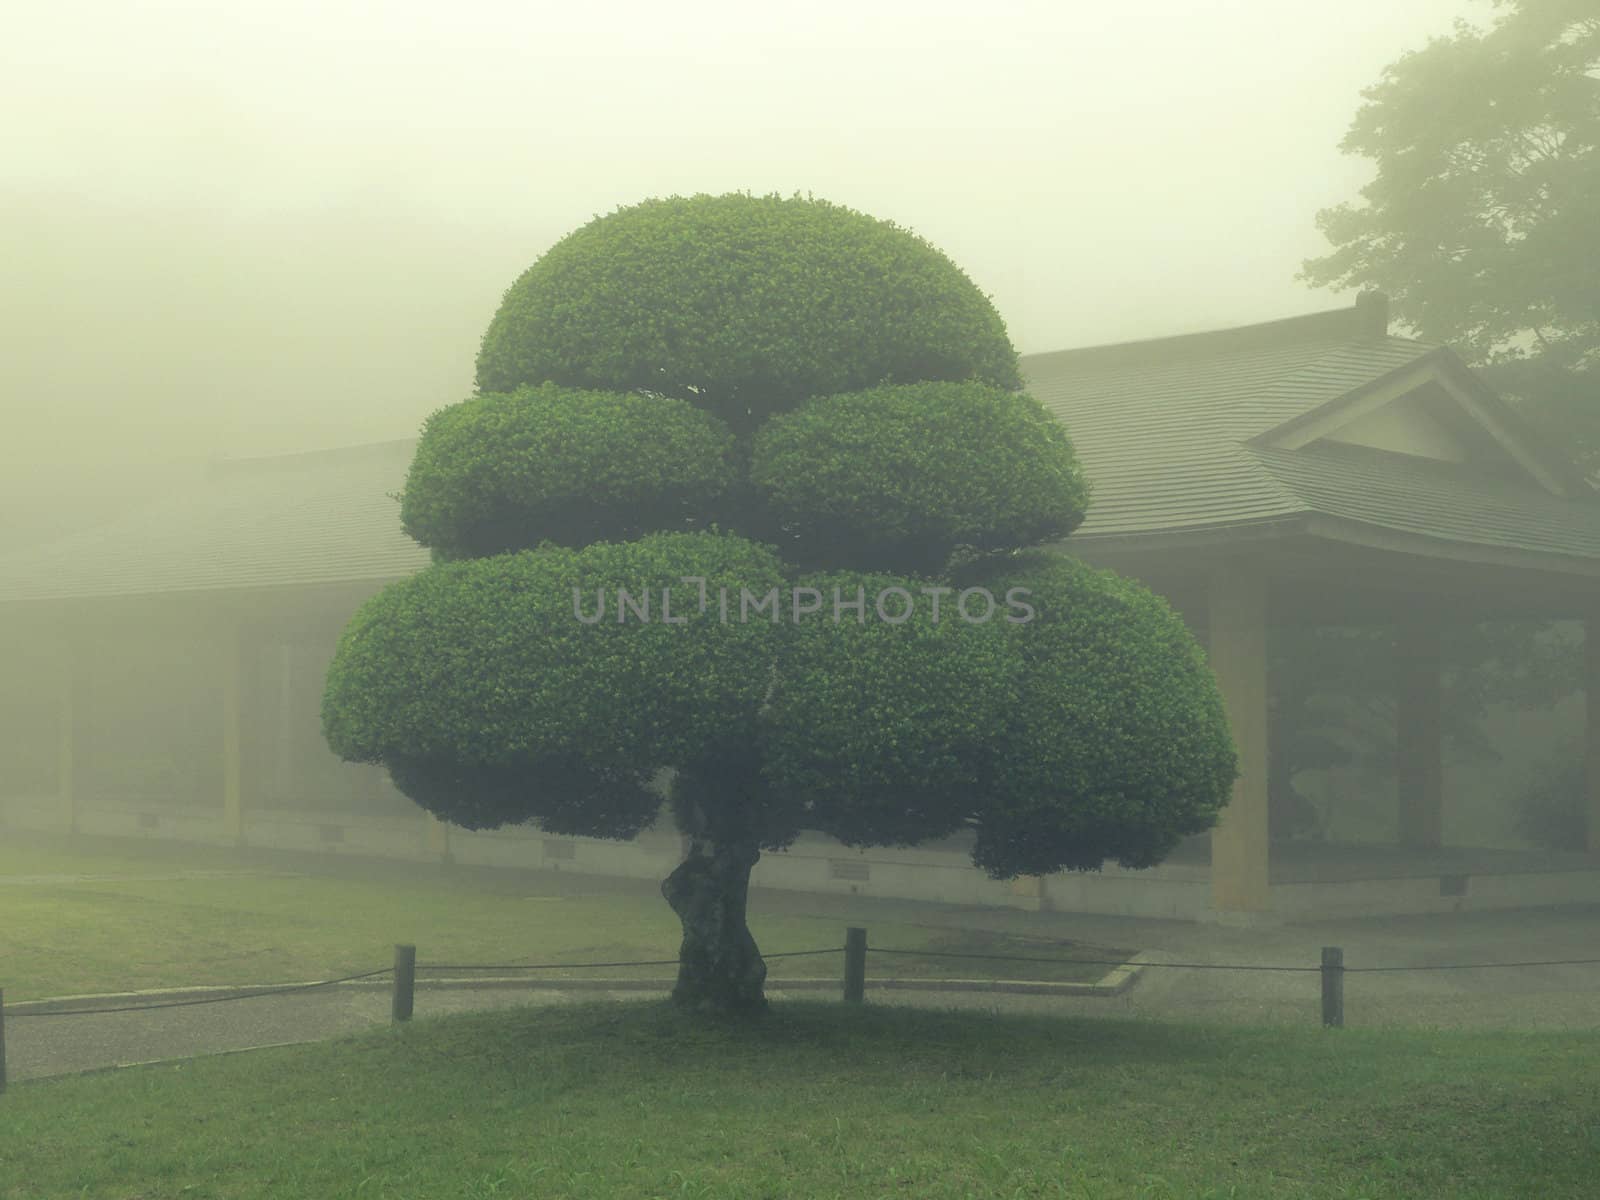 scenic tree in Japanese misty park